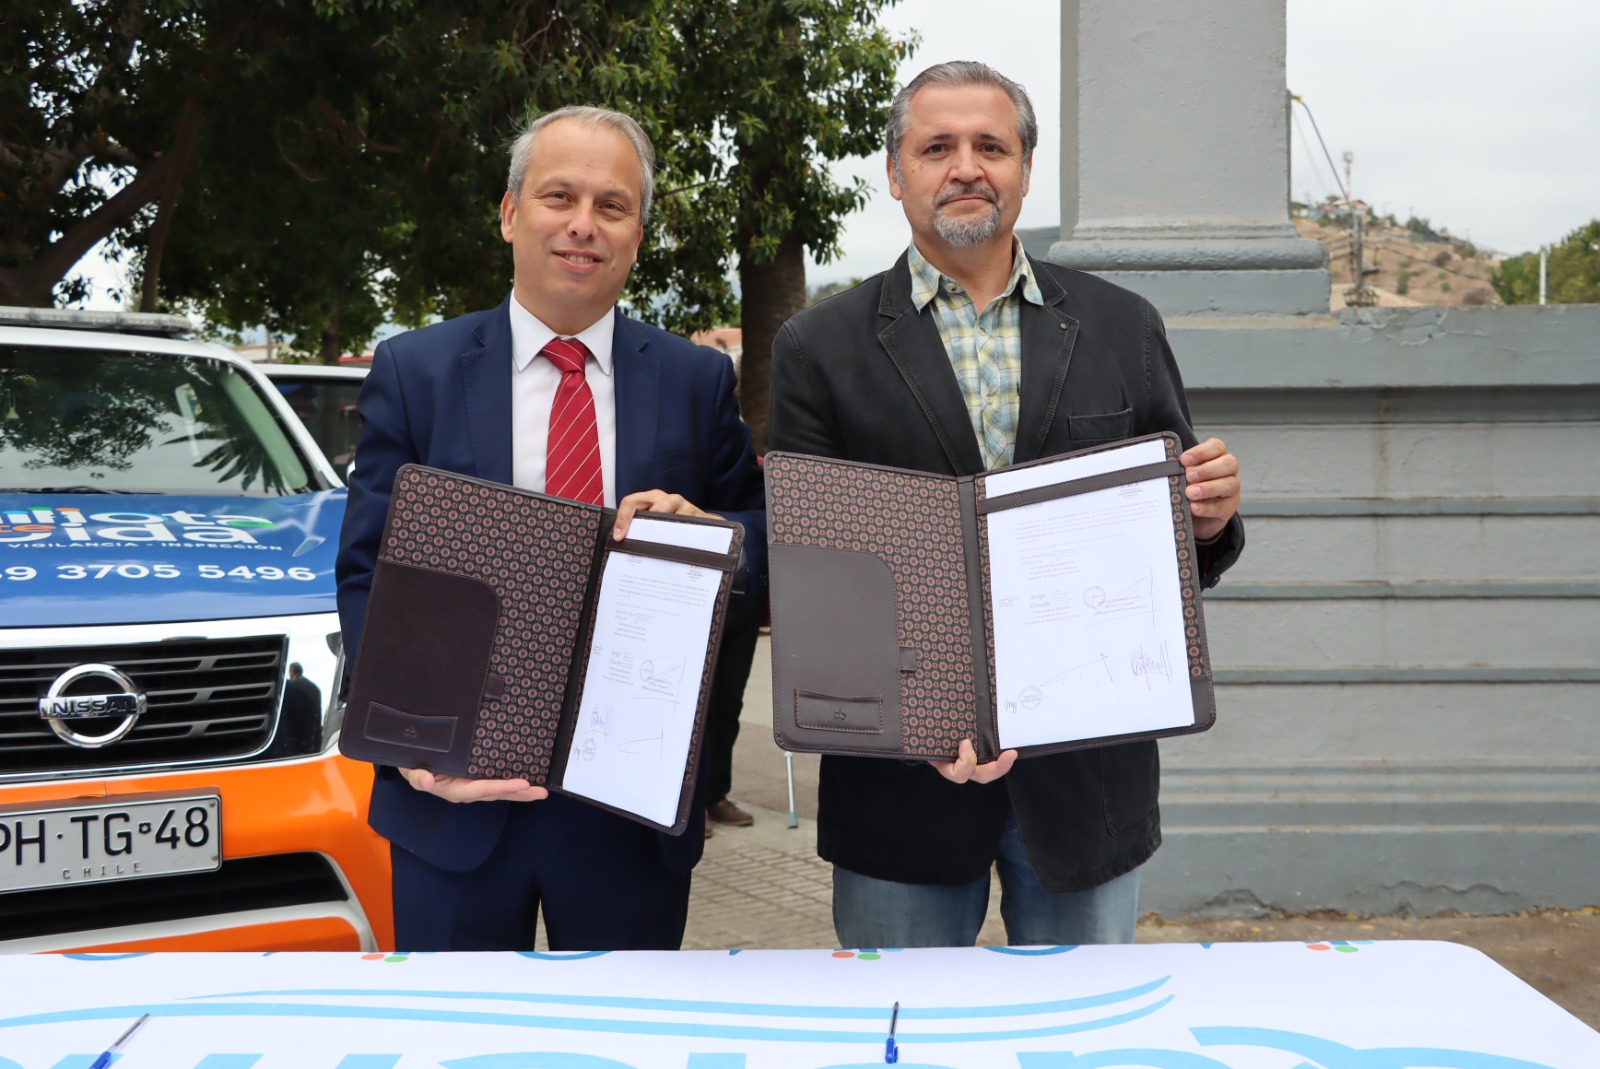 El alcalde Óscar Calderón firmó este importante convenio para mejorar la seguridad en la ciudad con el representante de la Asociación de Aseguradores de Chile, Diego Rojas.